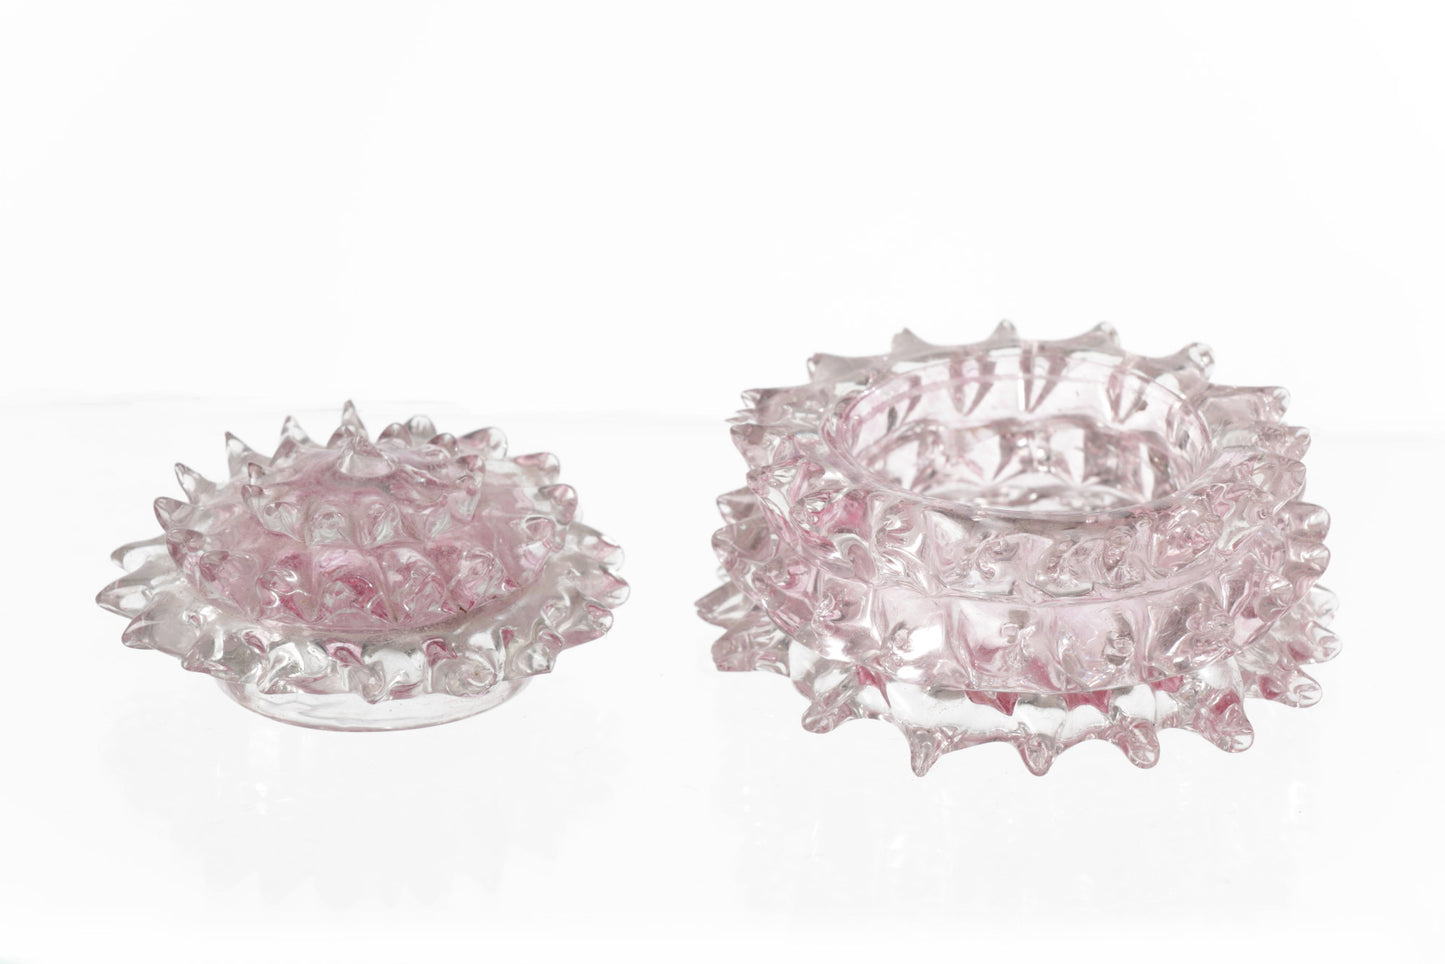 Pink ashlar glass vanity set